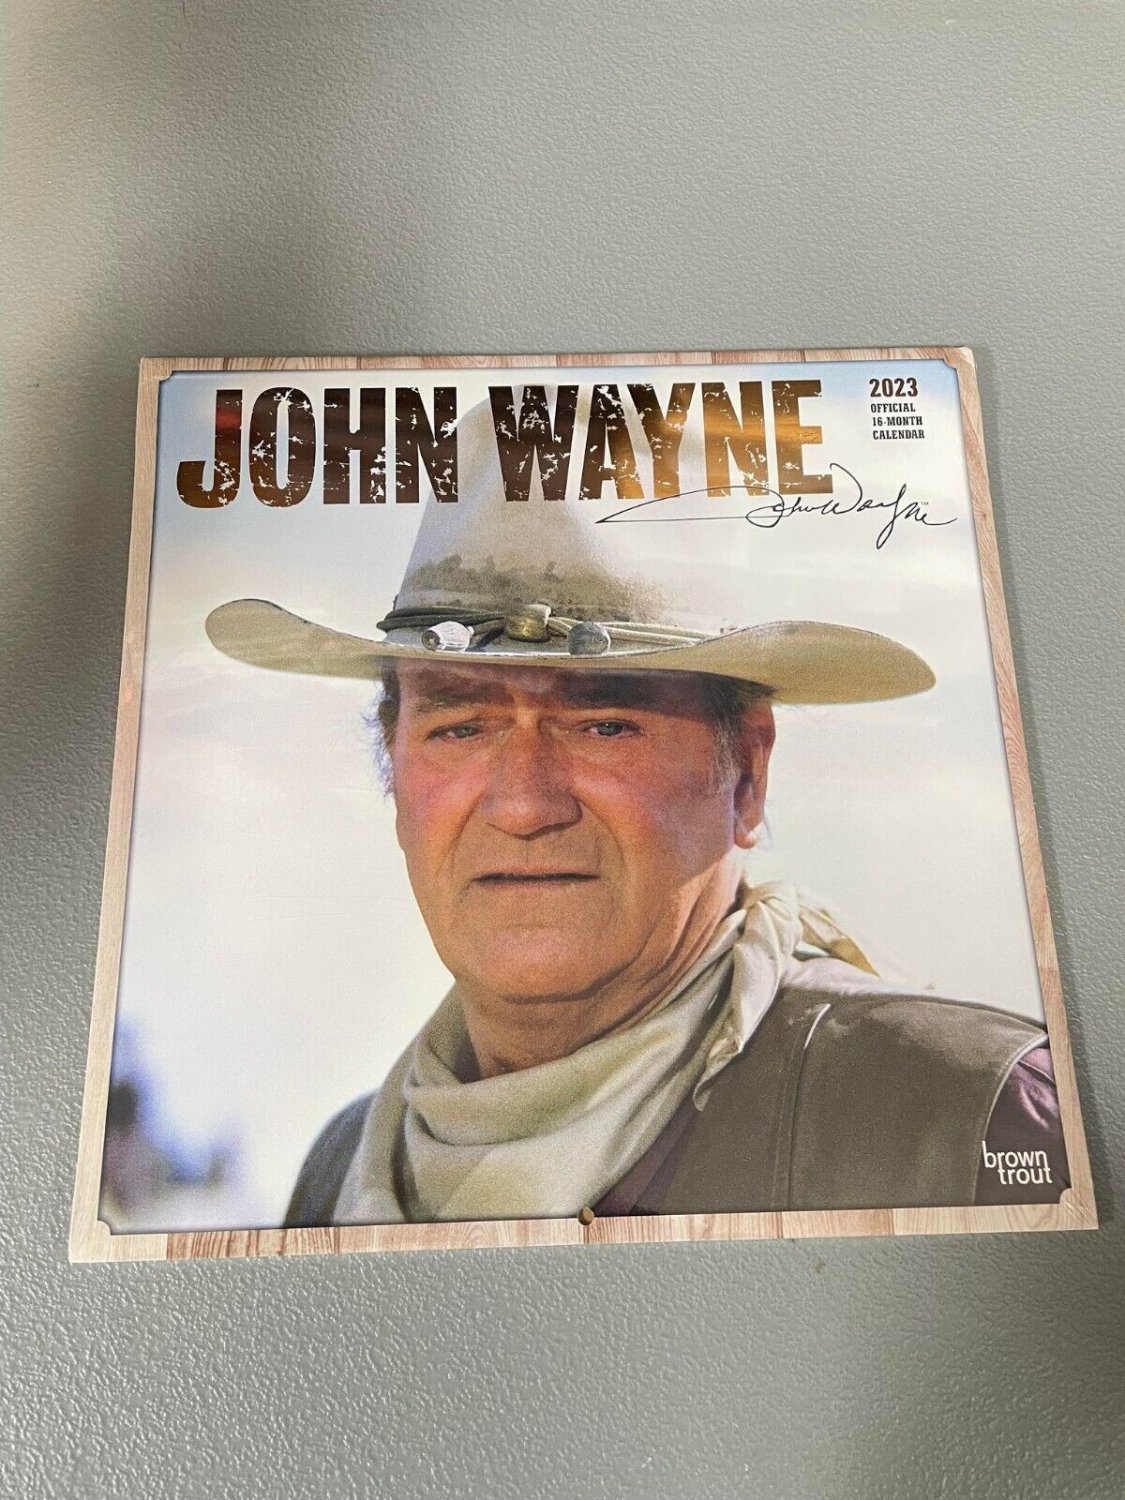 2023 John Wayne Calendar